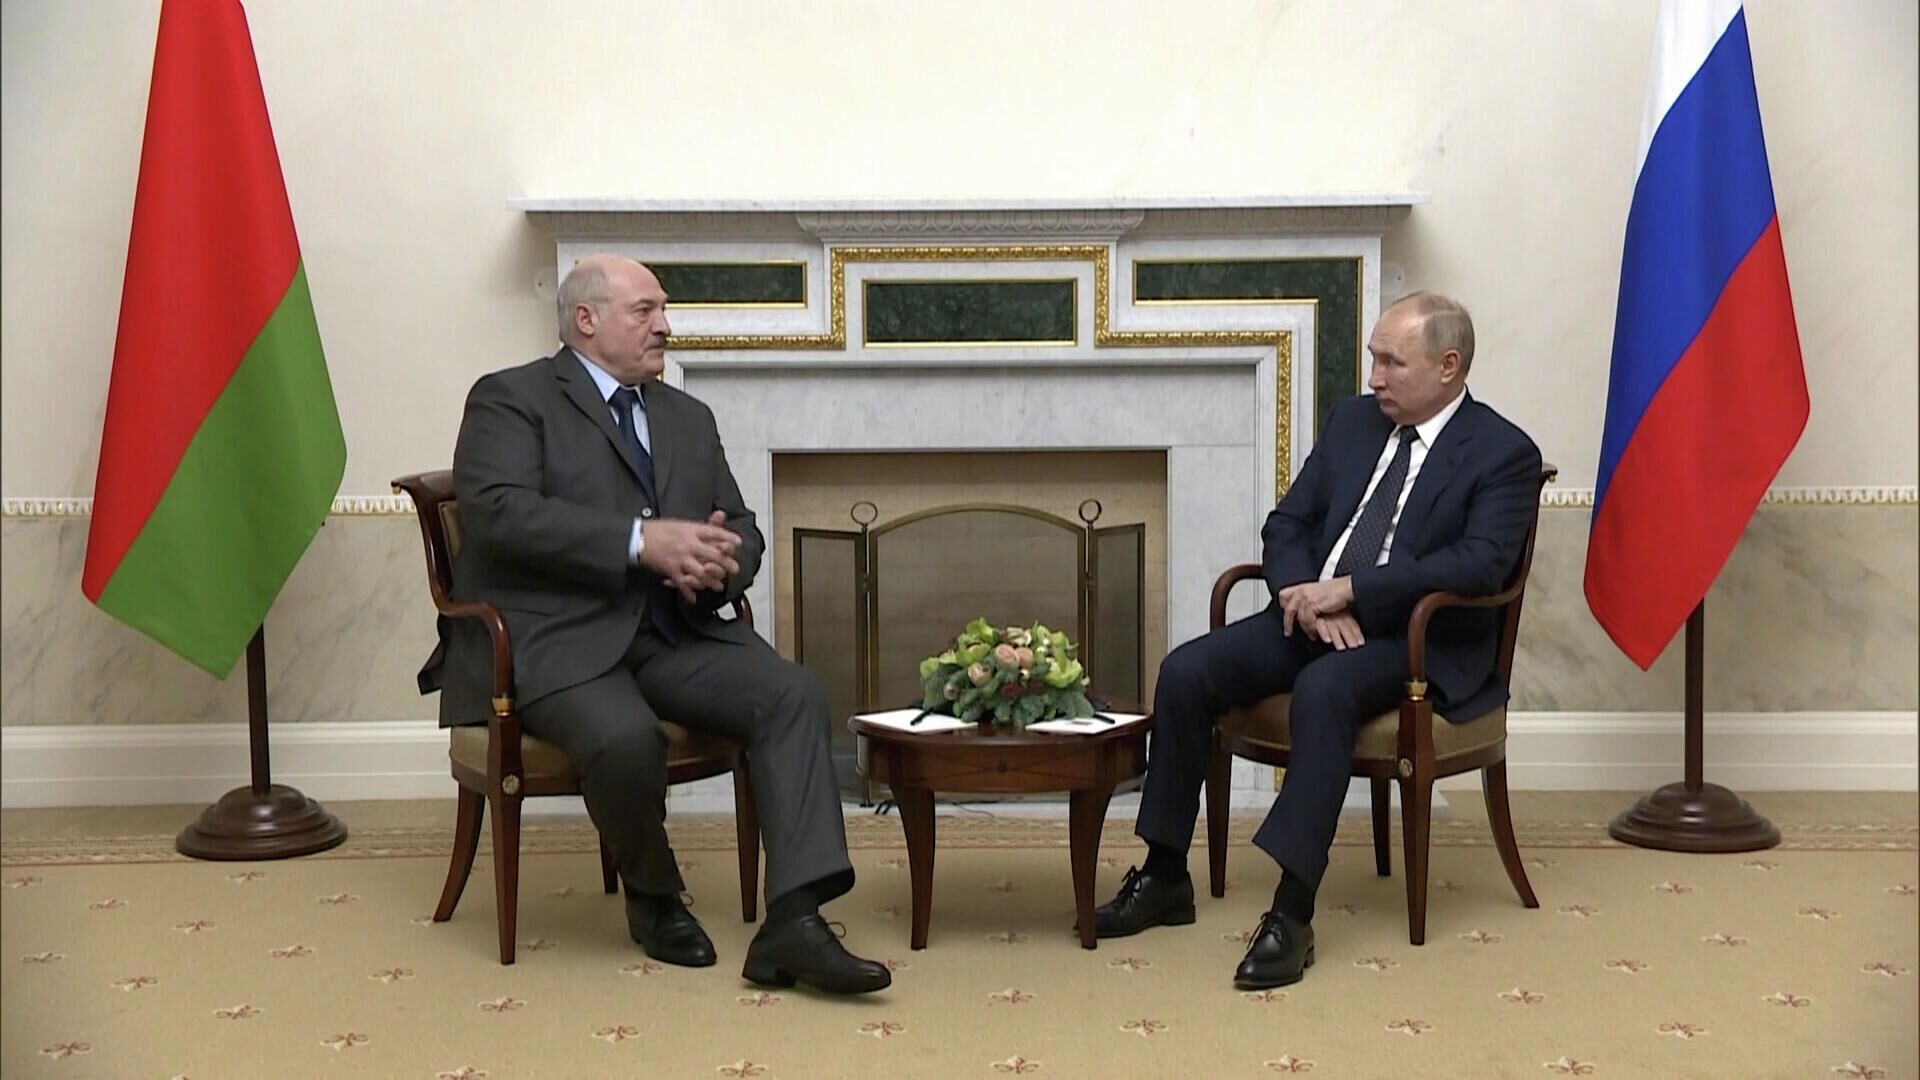 Дело не в лести – Лукашенко выразил признательность Путину за поддержку - РИА Новости, 1920, 29.12.2021